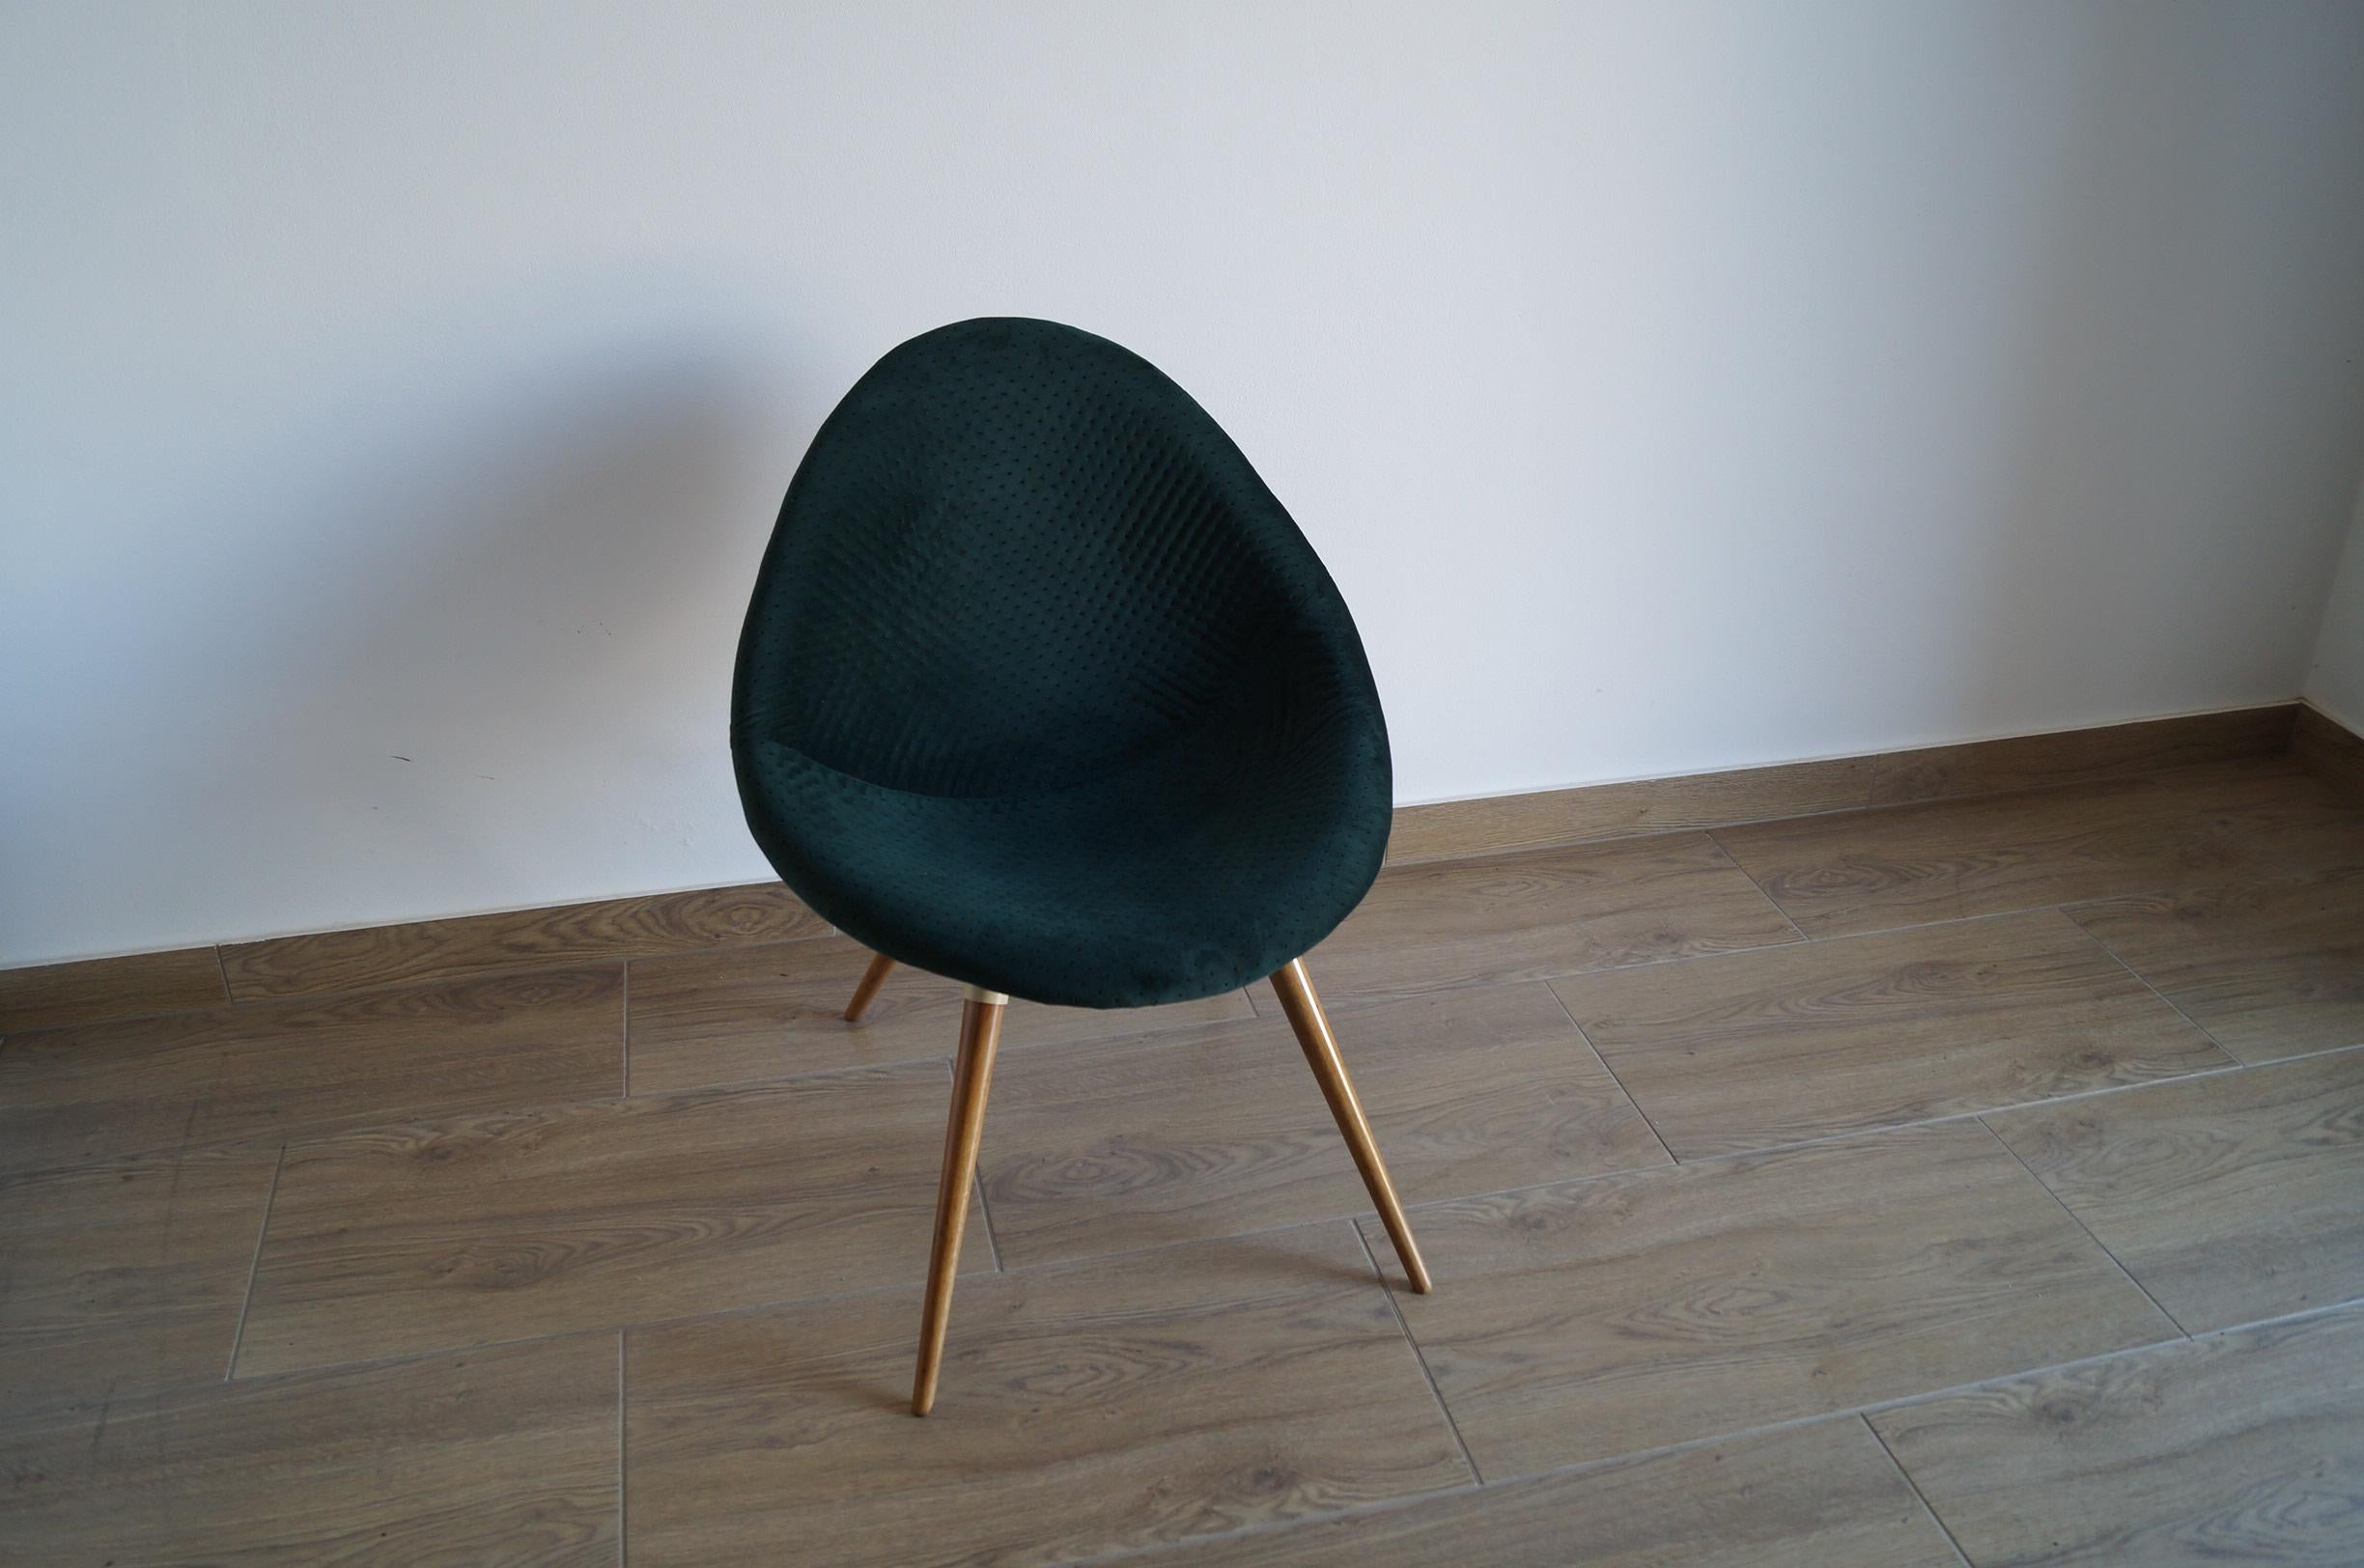 Art Deco Sessel Shell von 1950 Tschechische Republik.
Jedes Möbelstück, das unsere Werkstatt verlässt, wird von Anfang bis Ende einer manuellen Renovierung unterzogen, um den ursprünglichen Zustand von vor vielen Jahren wiederherzustellen (es wurde